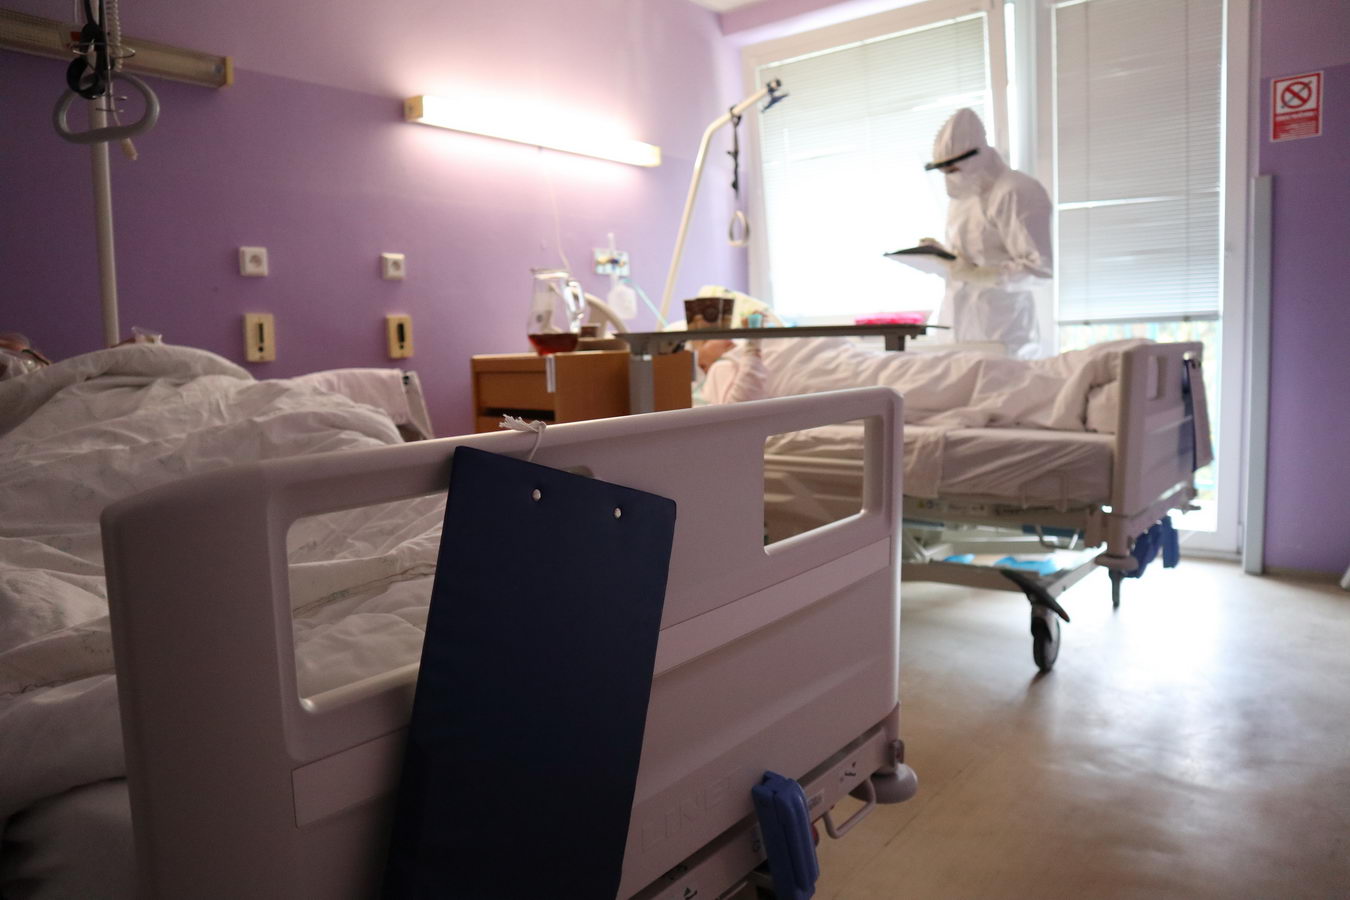 2370 fnsp zapocet covid hospitalizacii vzrastol v ziline dvojnasobne jpg